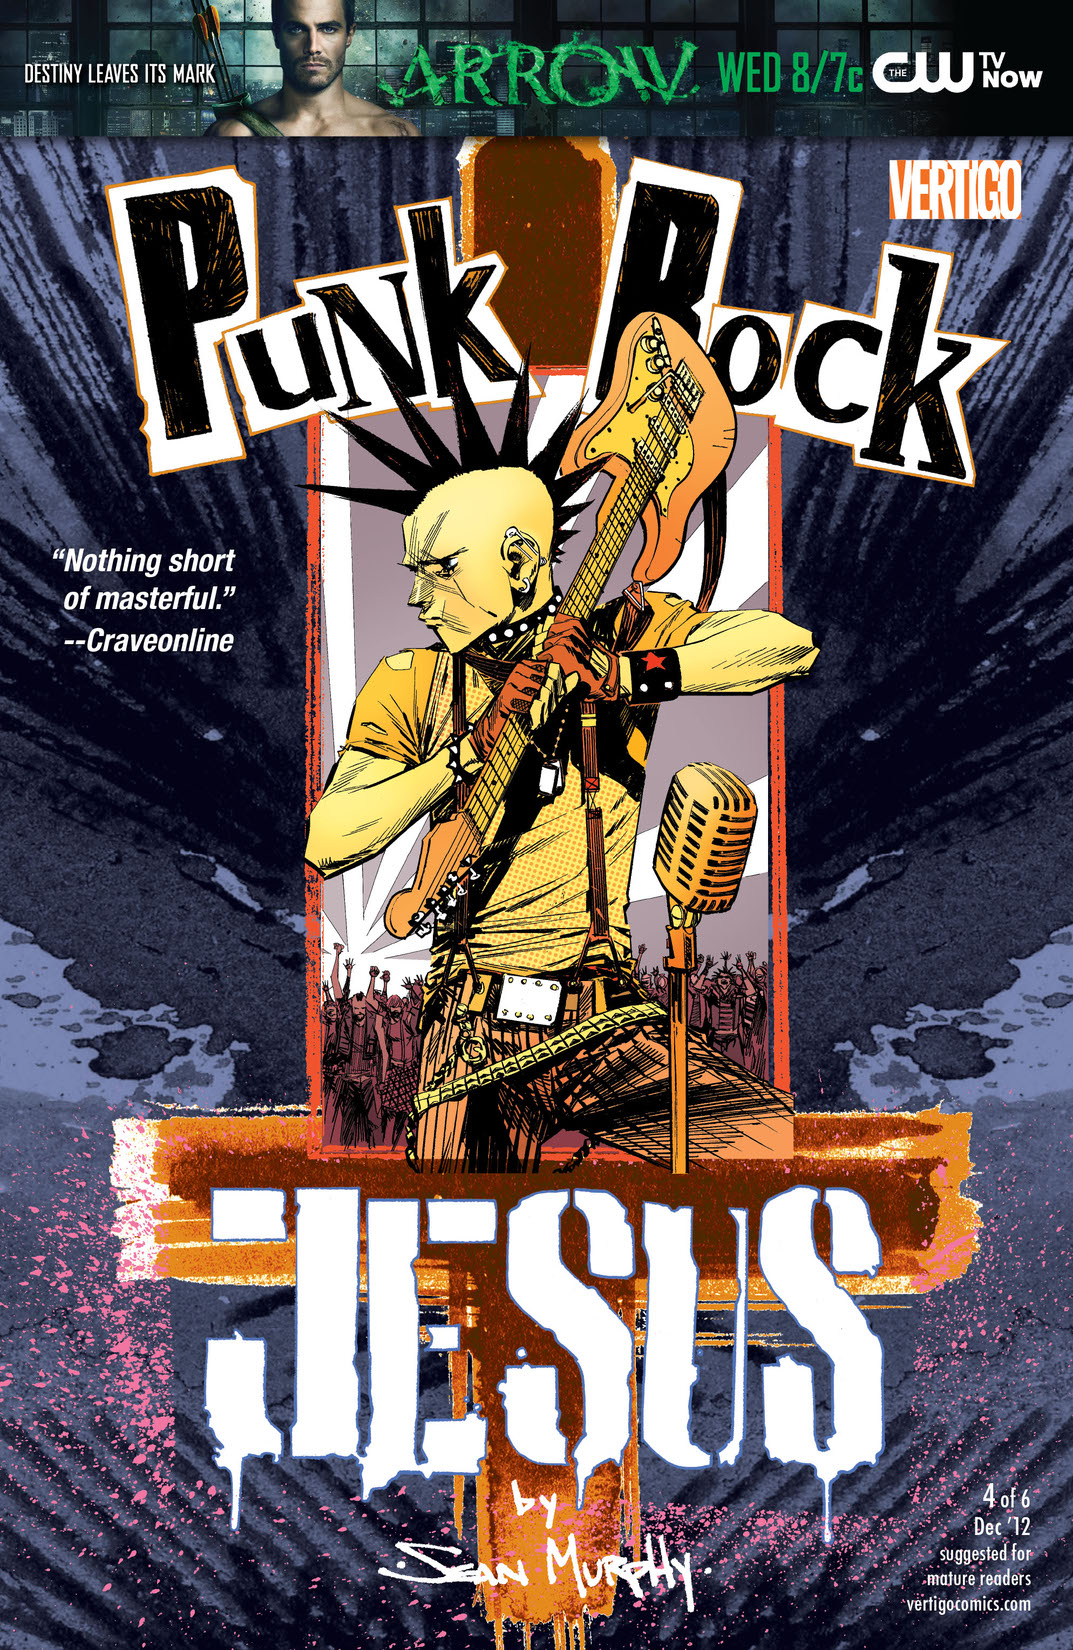 Punk Rock Jesus #4 preview images